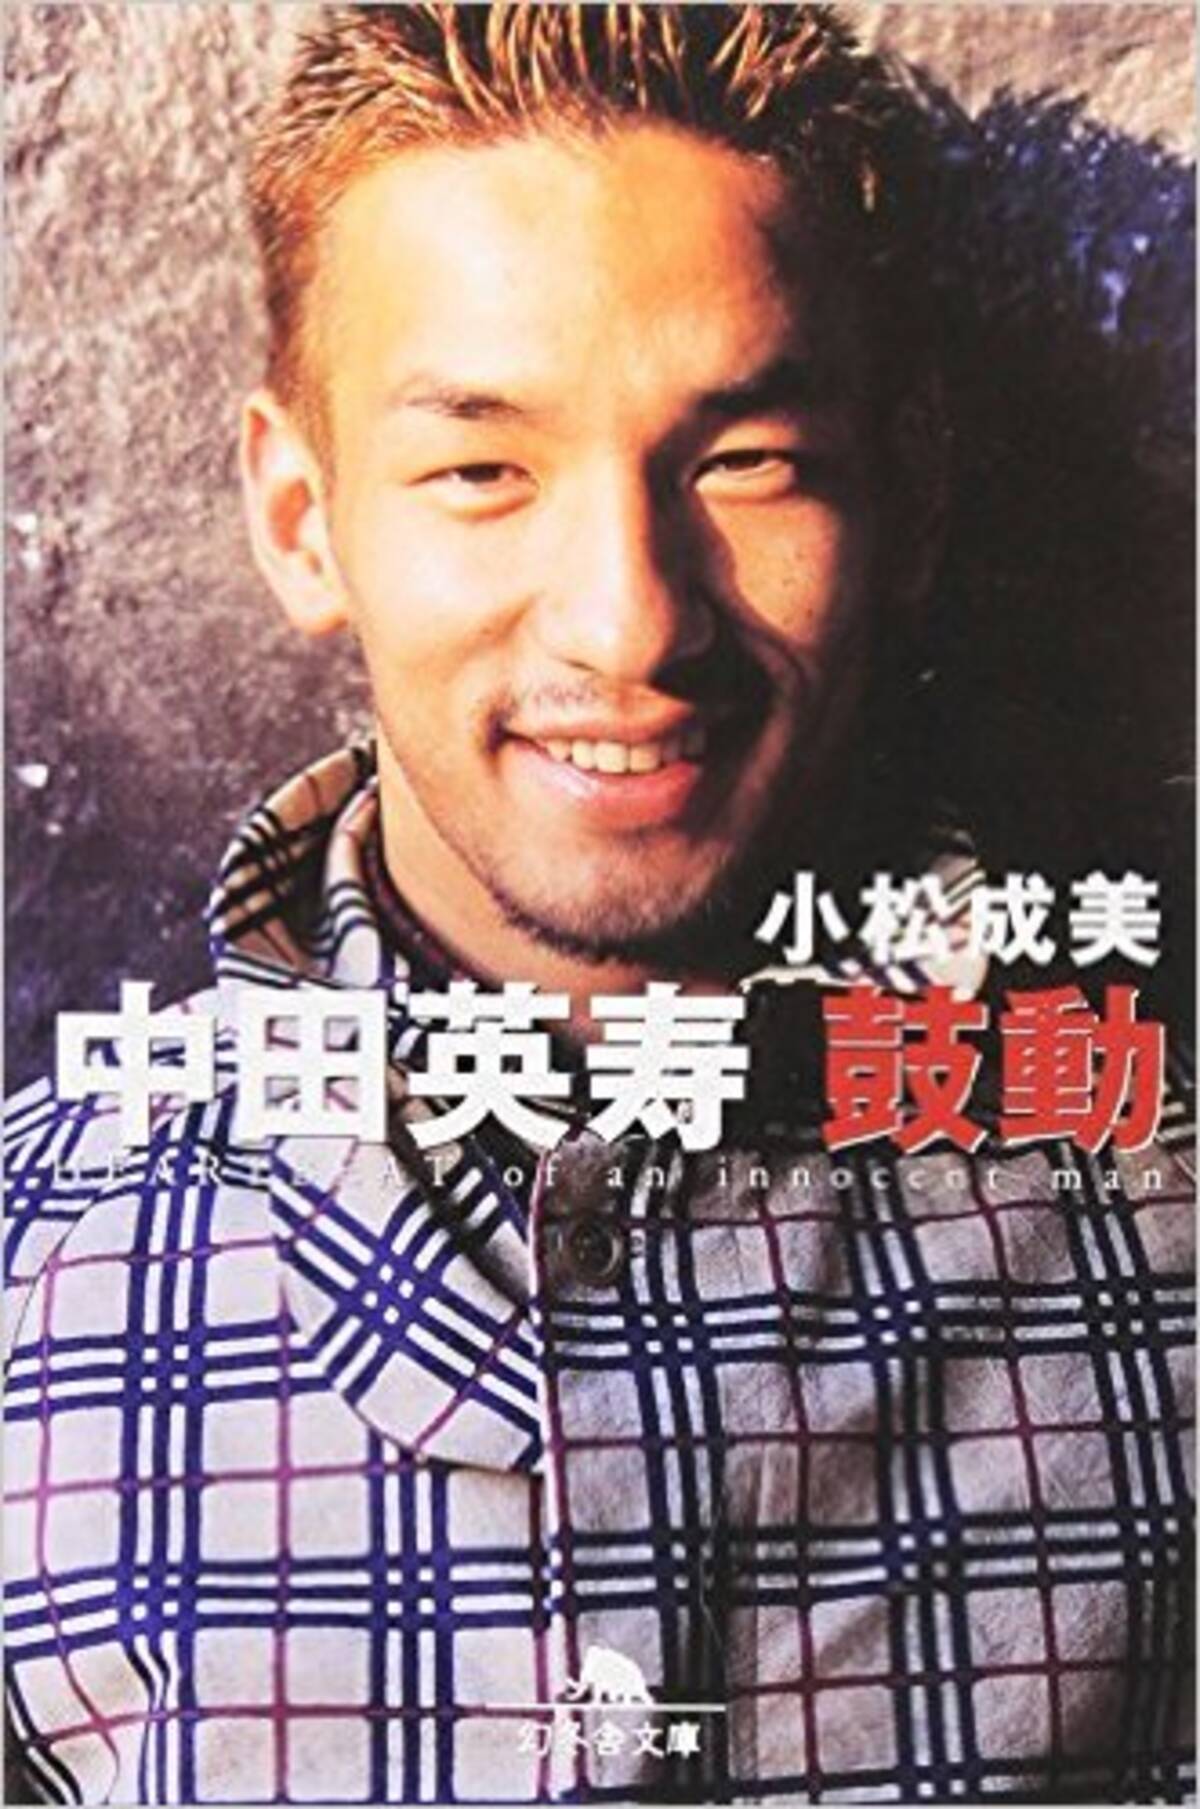 中田英寿以上の才能も 一度も日本代表に選ばれず引退した財前宣之 エキサイトニュース 2 2